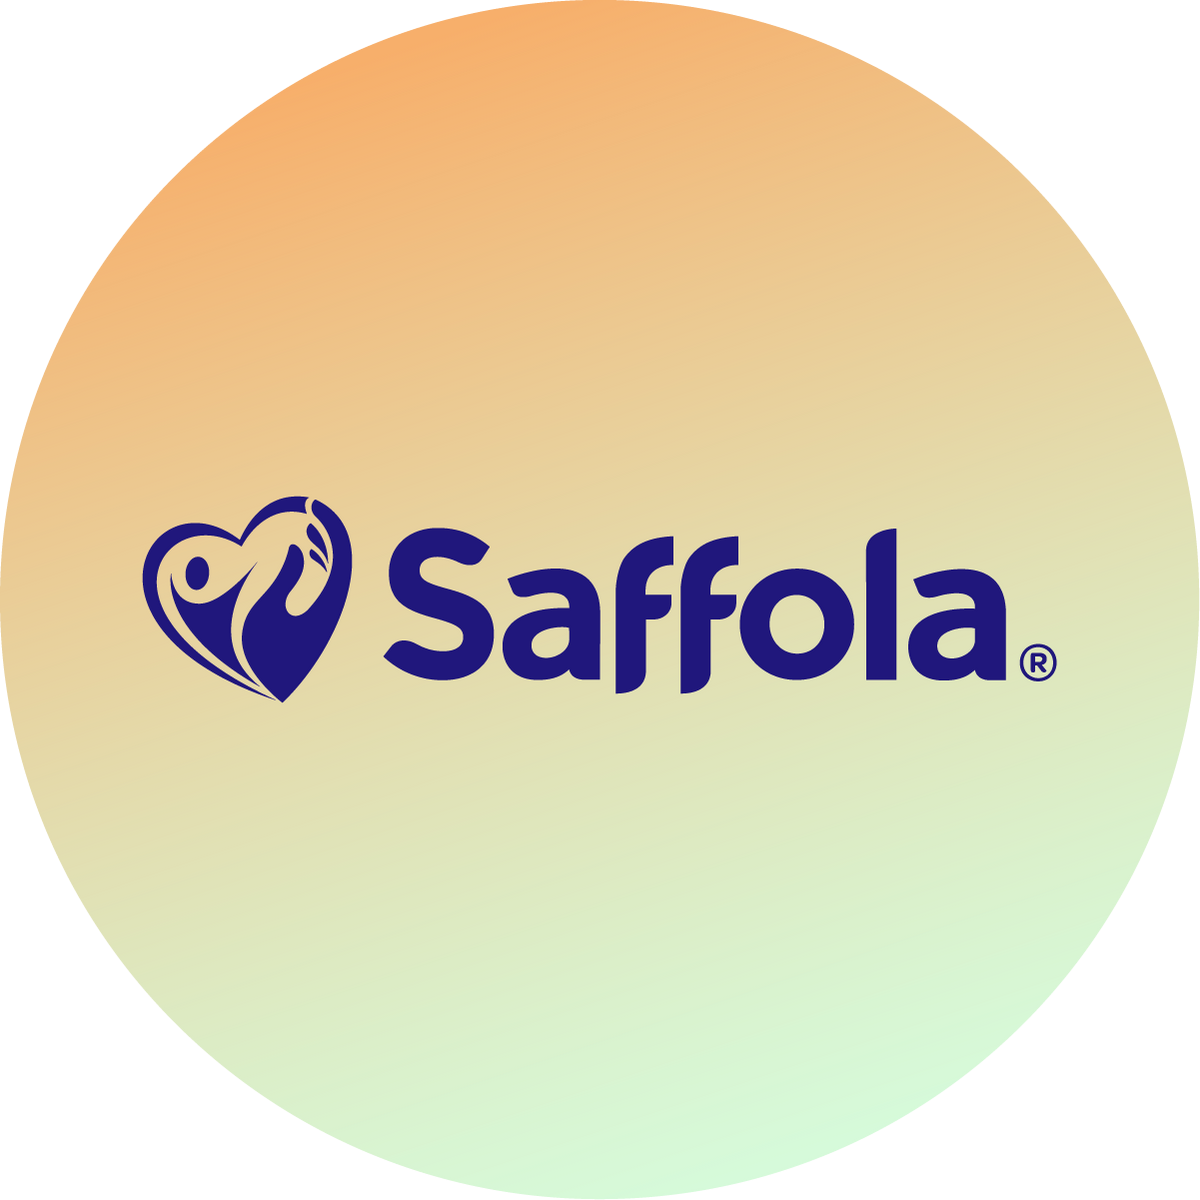 brand-trust-of-saffola-icon